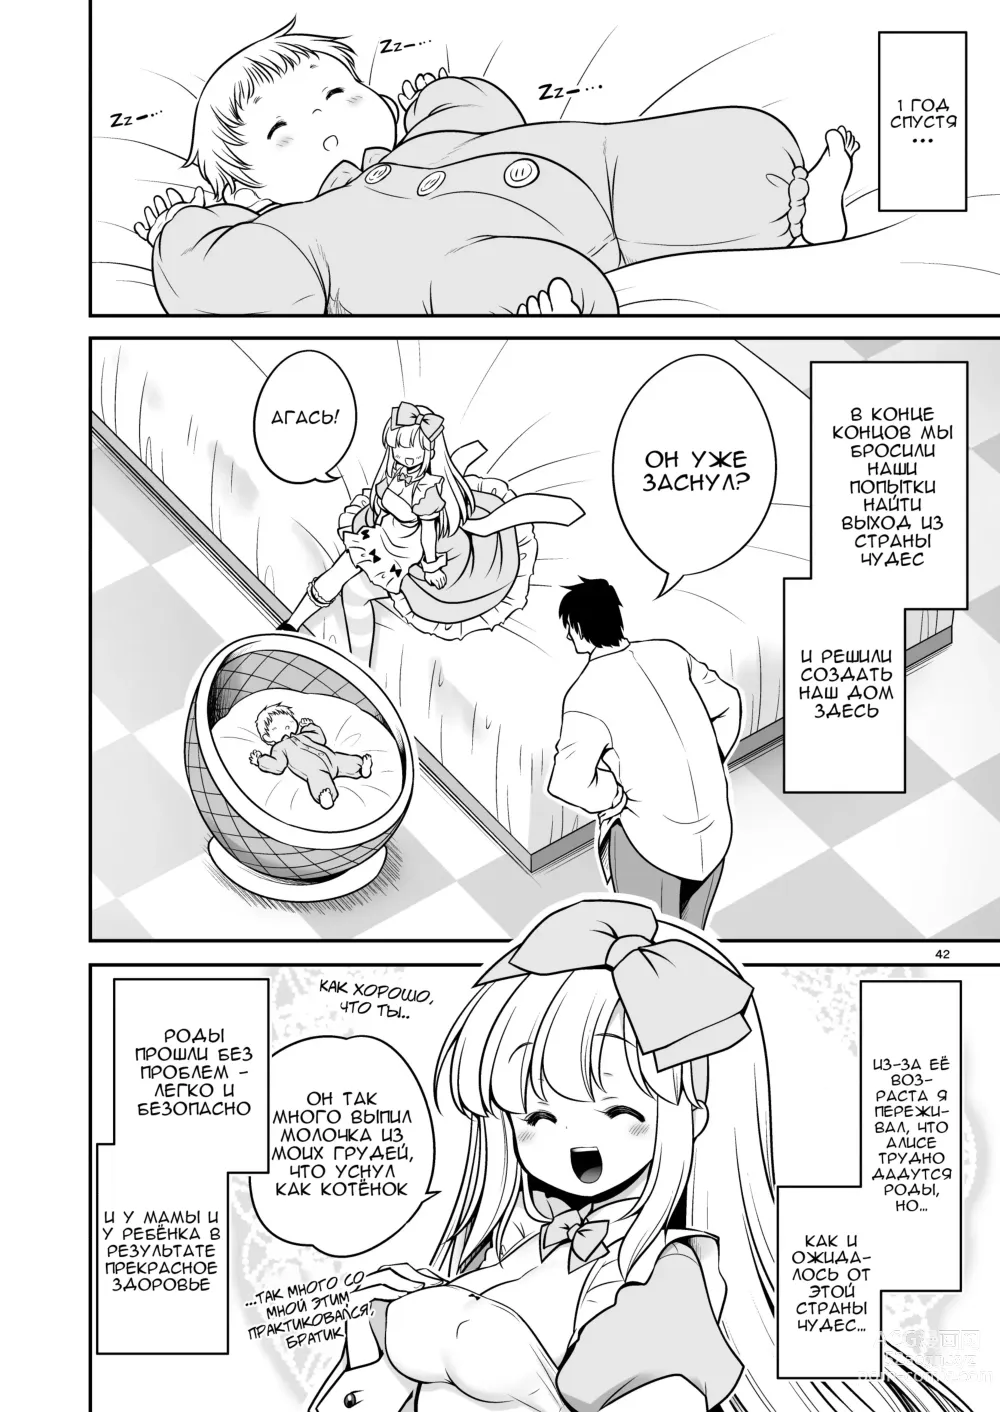 Page 42 of doujinshi Безнадёжная алиса, которая настолько подсела на сексуальное лечение, что без разбора ела все ядовитые пироженки